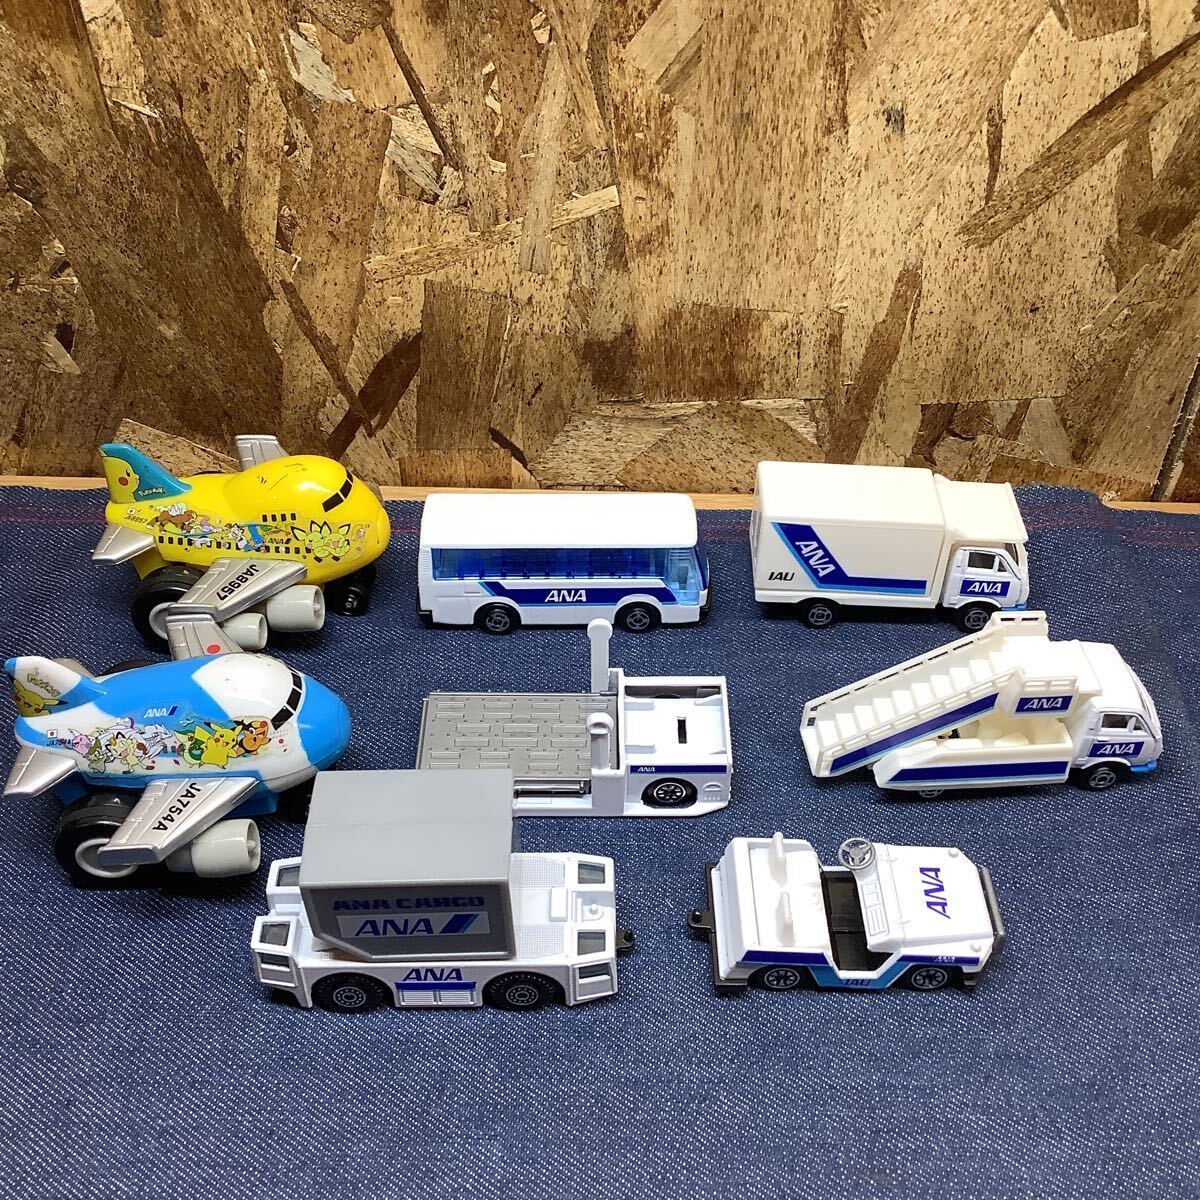 送料無料【Sて1342】ANA 空港セットANA アナ ダイキャスト エアポートセット エアバス おもちゃ模型の画像1